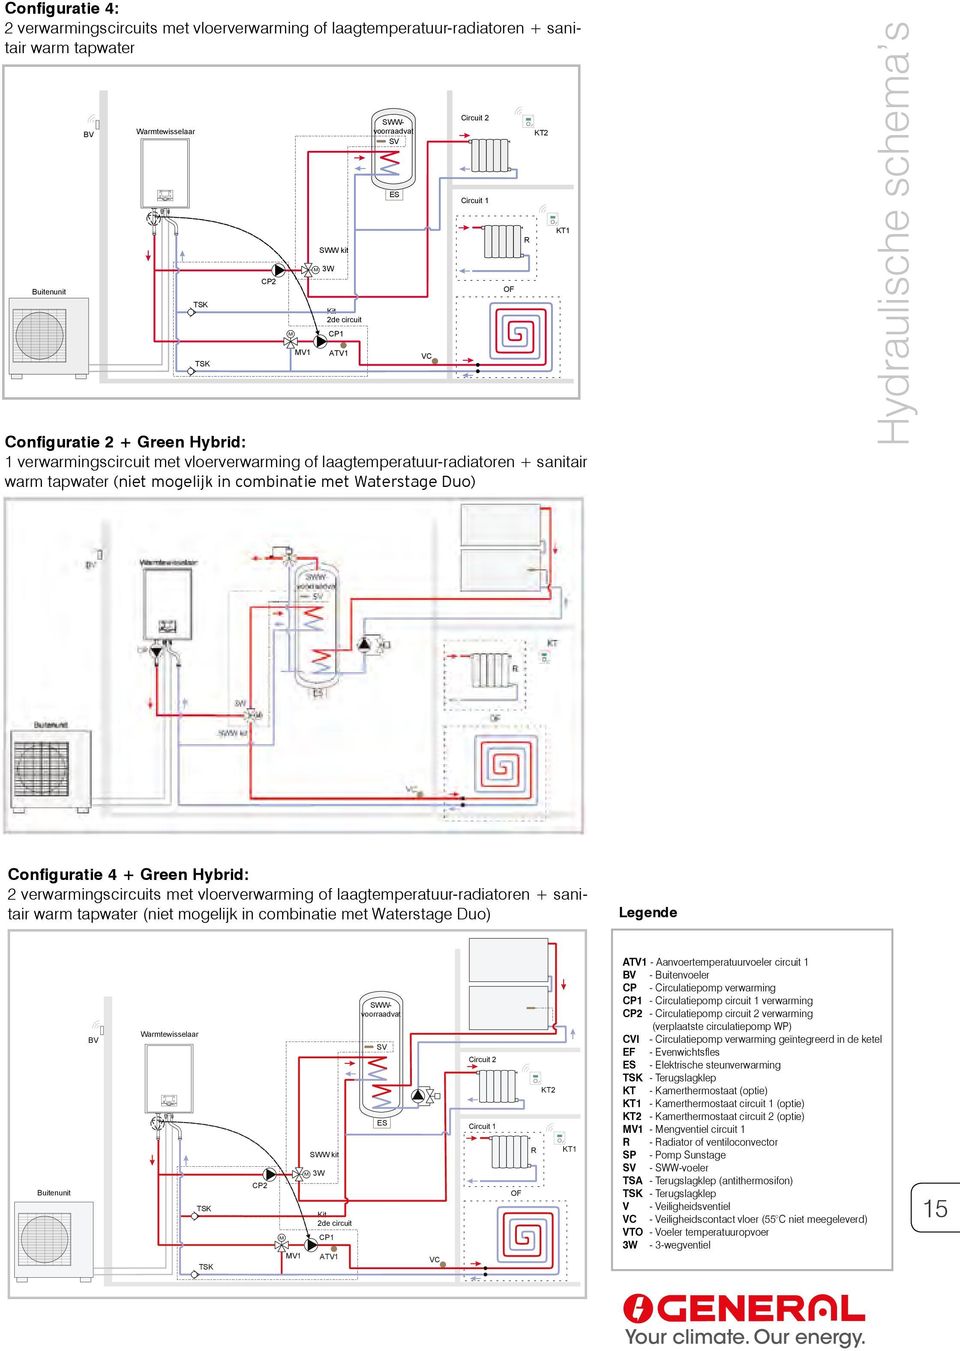 Veiligheidscontact vloerverwarming warm CP1 Circulatiepomp tapwater circuit (niet 1 verwarming mogelijk in combinatie SV met SWWvoeler Waterstage Duo) CP2 Circulatiepomp circuit 2 verwarming